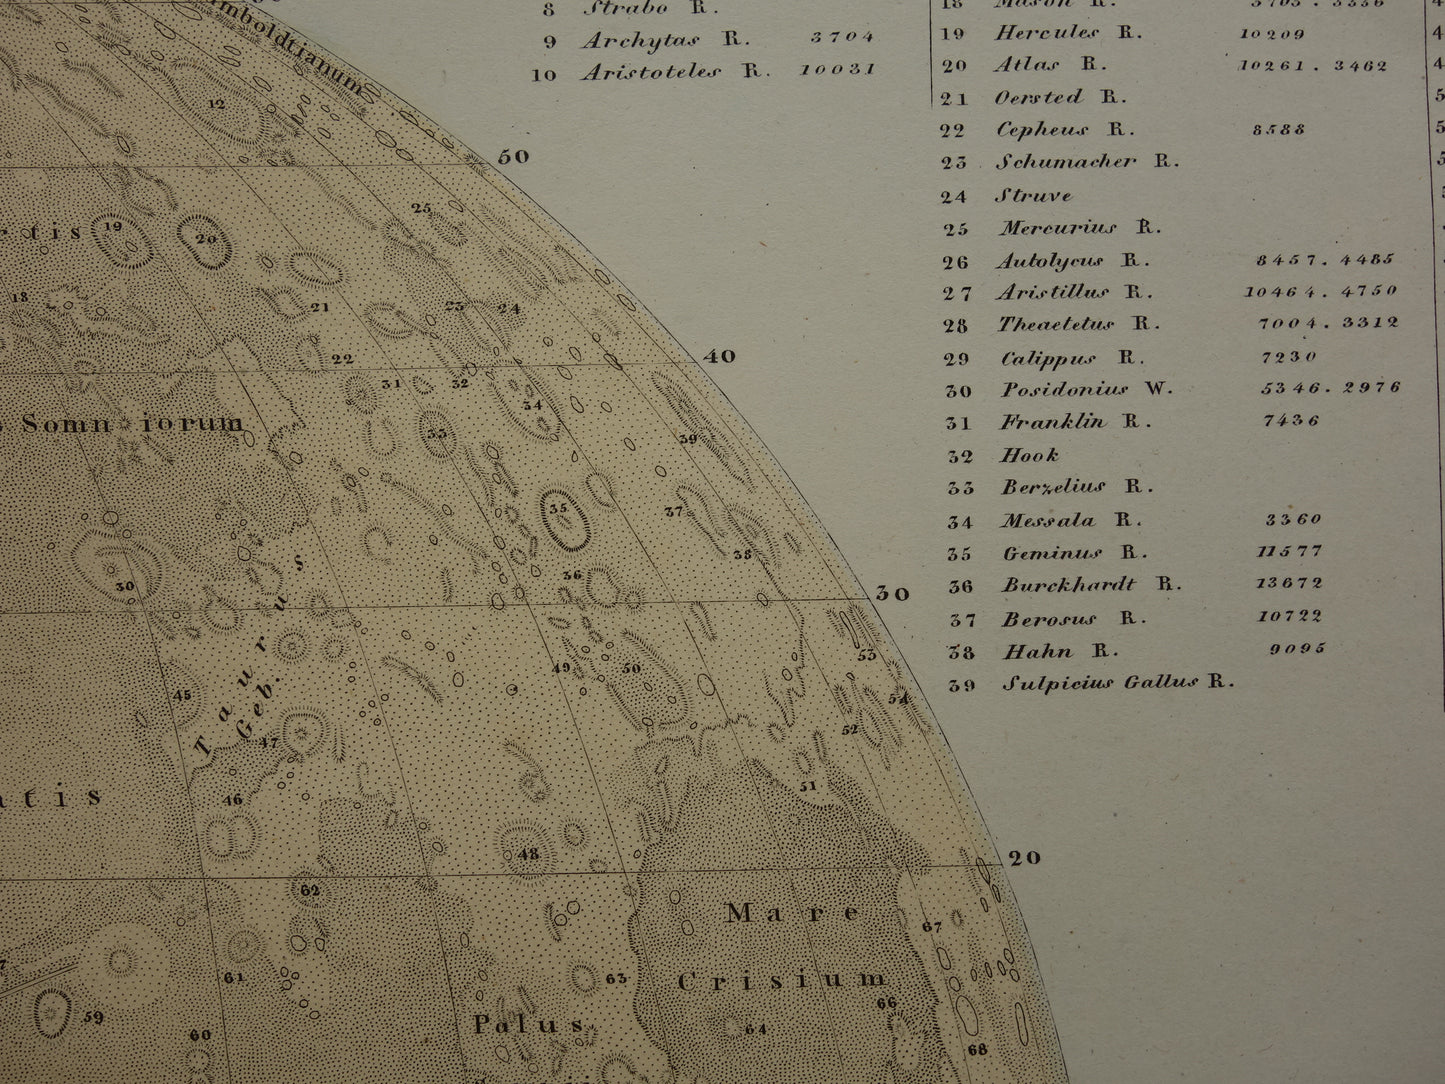 145+ jaar oude kaart van de Maan originele antieke poster zichtbare zijde van de maan met jaartal 1876 maankaart